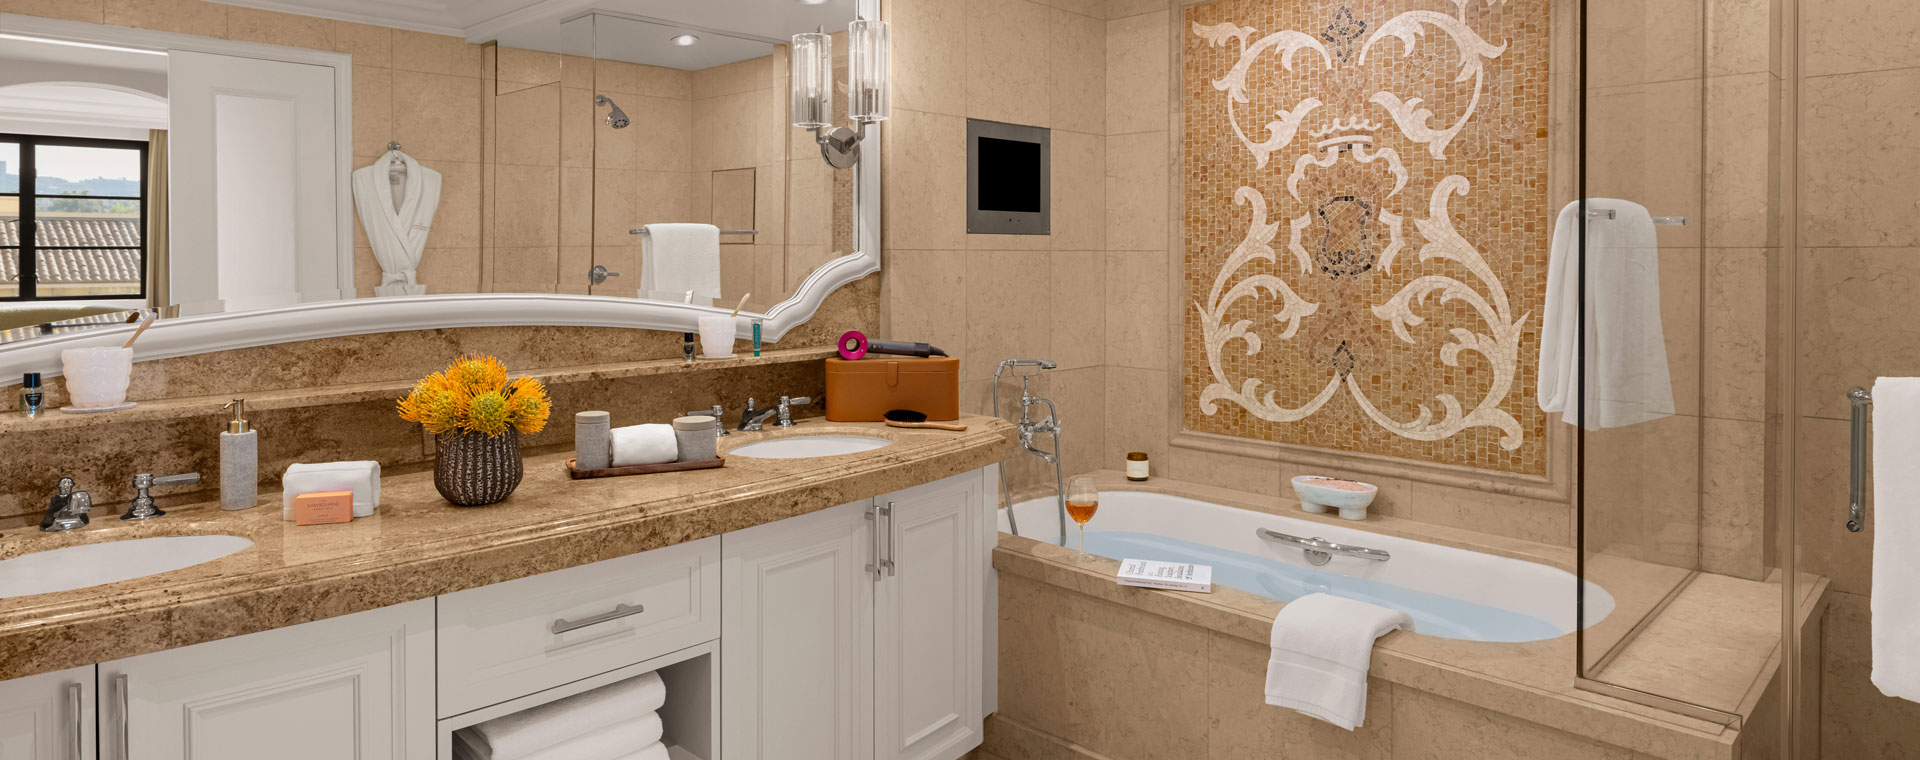 Tidy bathroom, delicate towel draped on bathtub's edge, exuding subtle sophistication effortlessly.